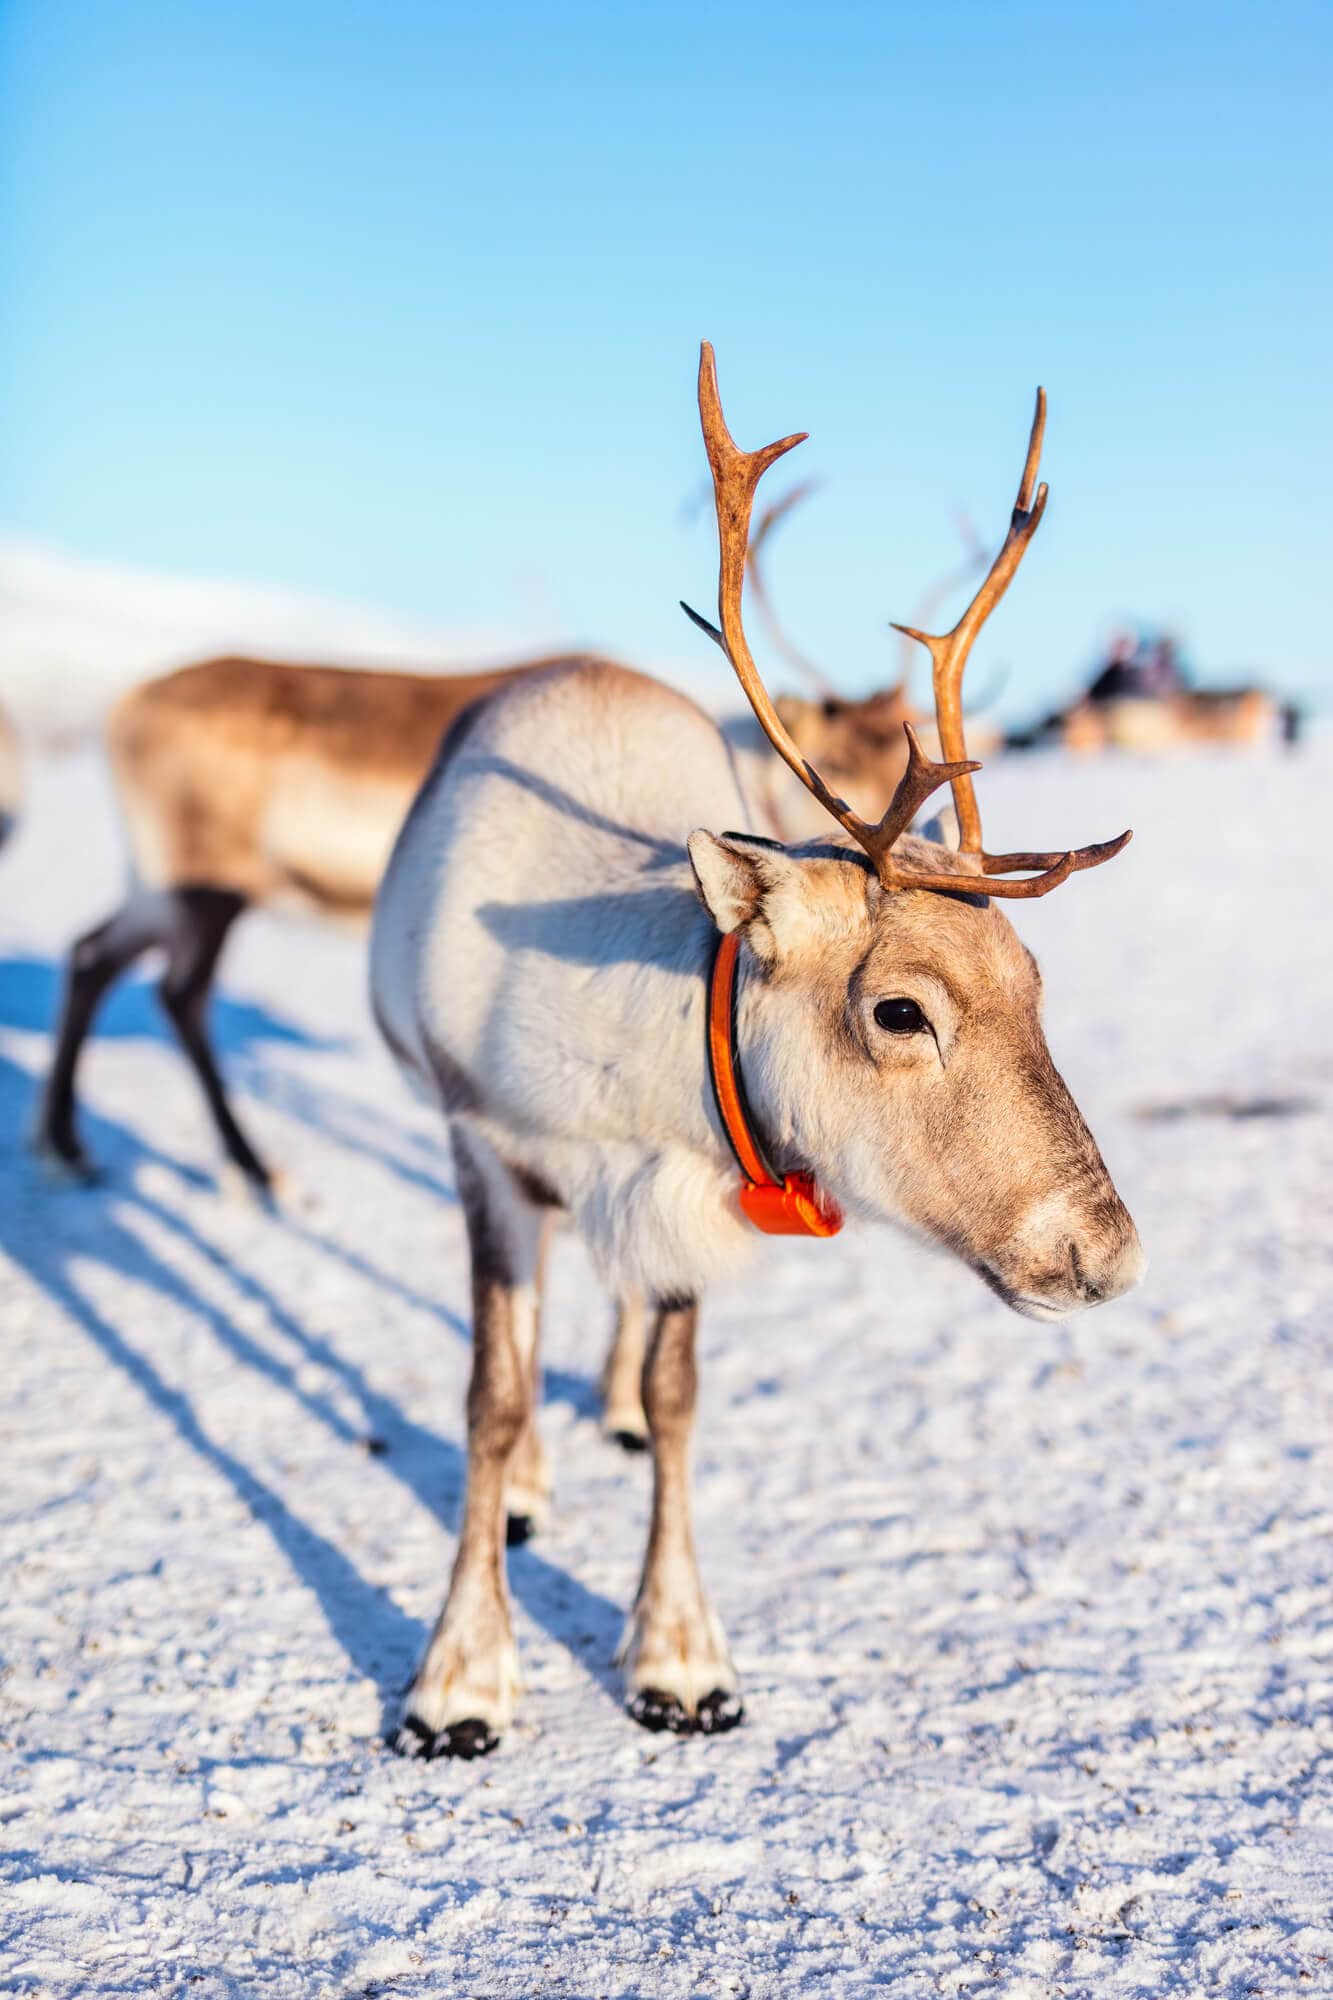 Top things to do in Norway - Reindeer in northern Norway